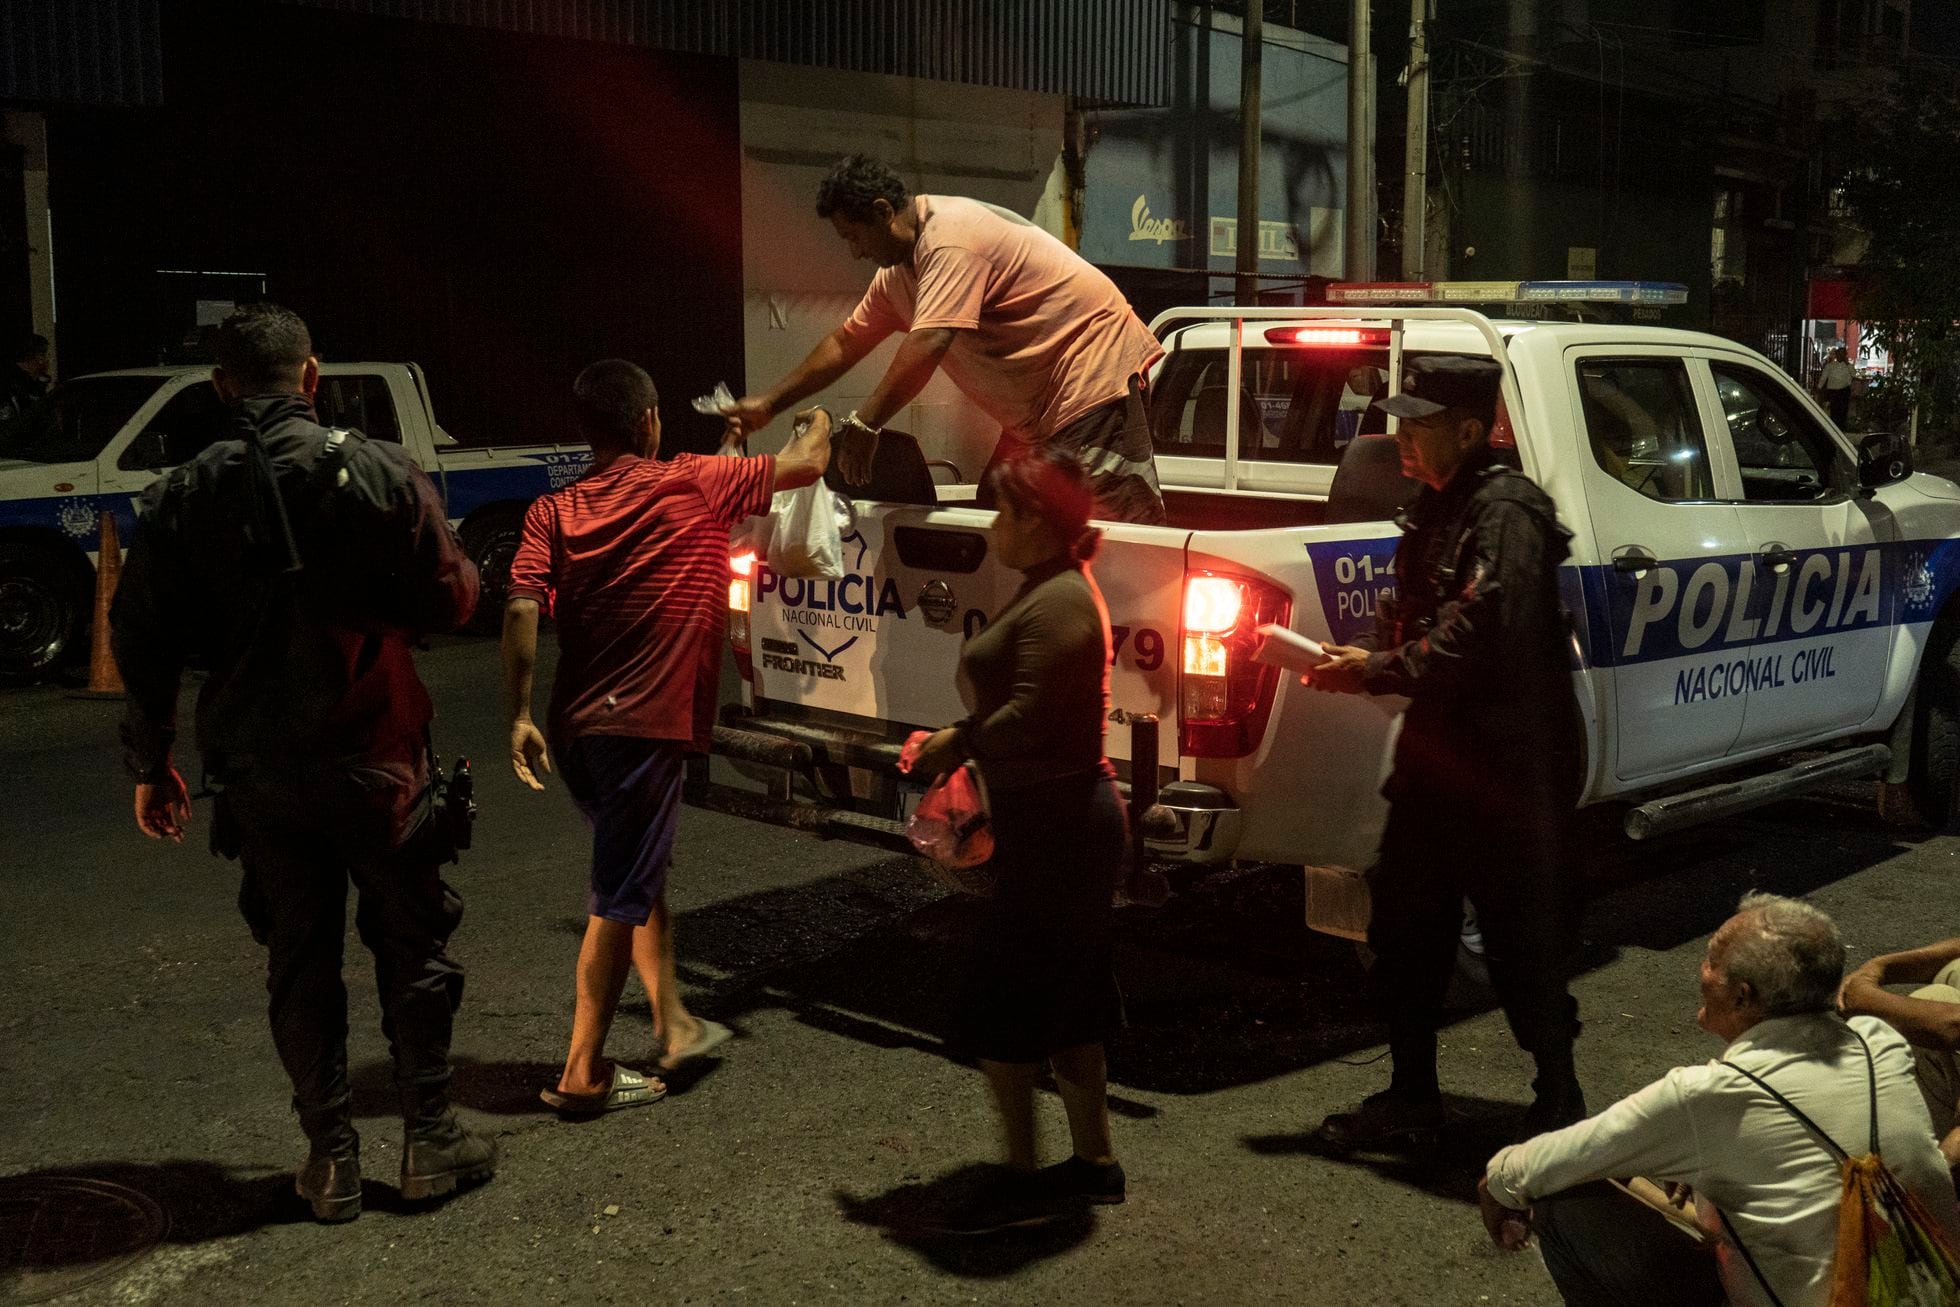 Policías transportan a nuevos detenidos durante el régimen de excepción. Estos son llevados a la sede de El Penalito, en San Salvador.